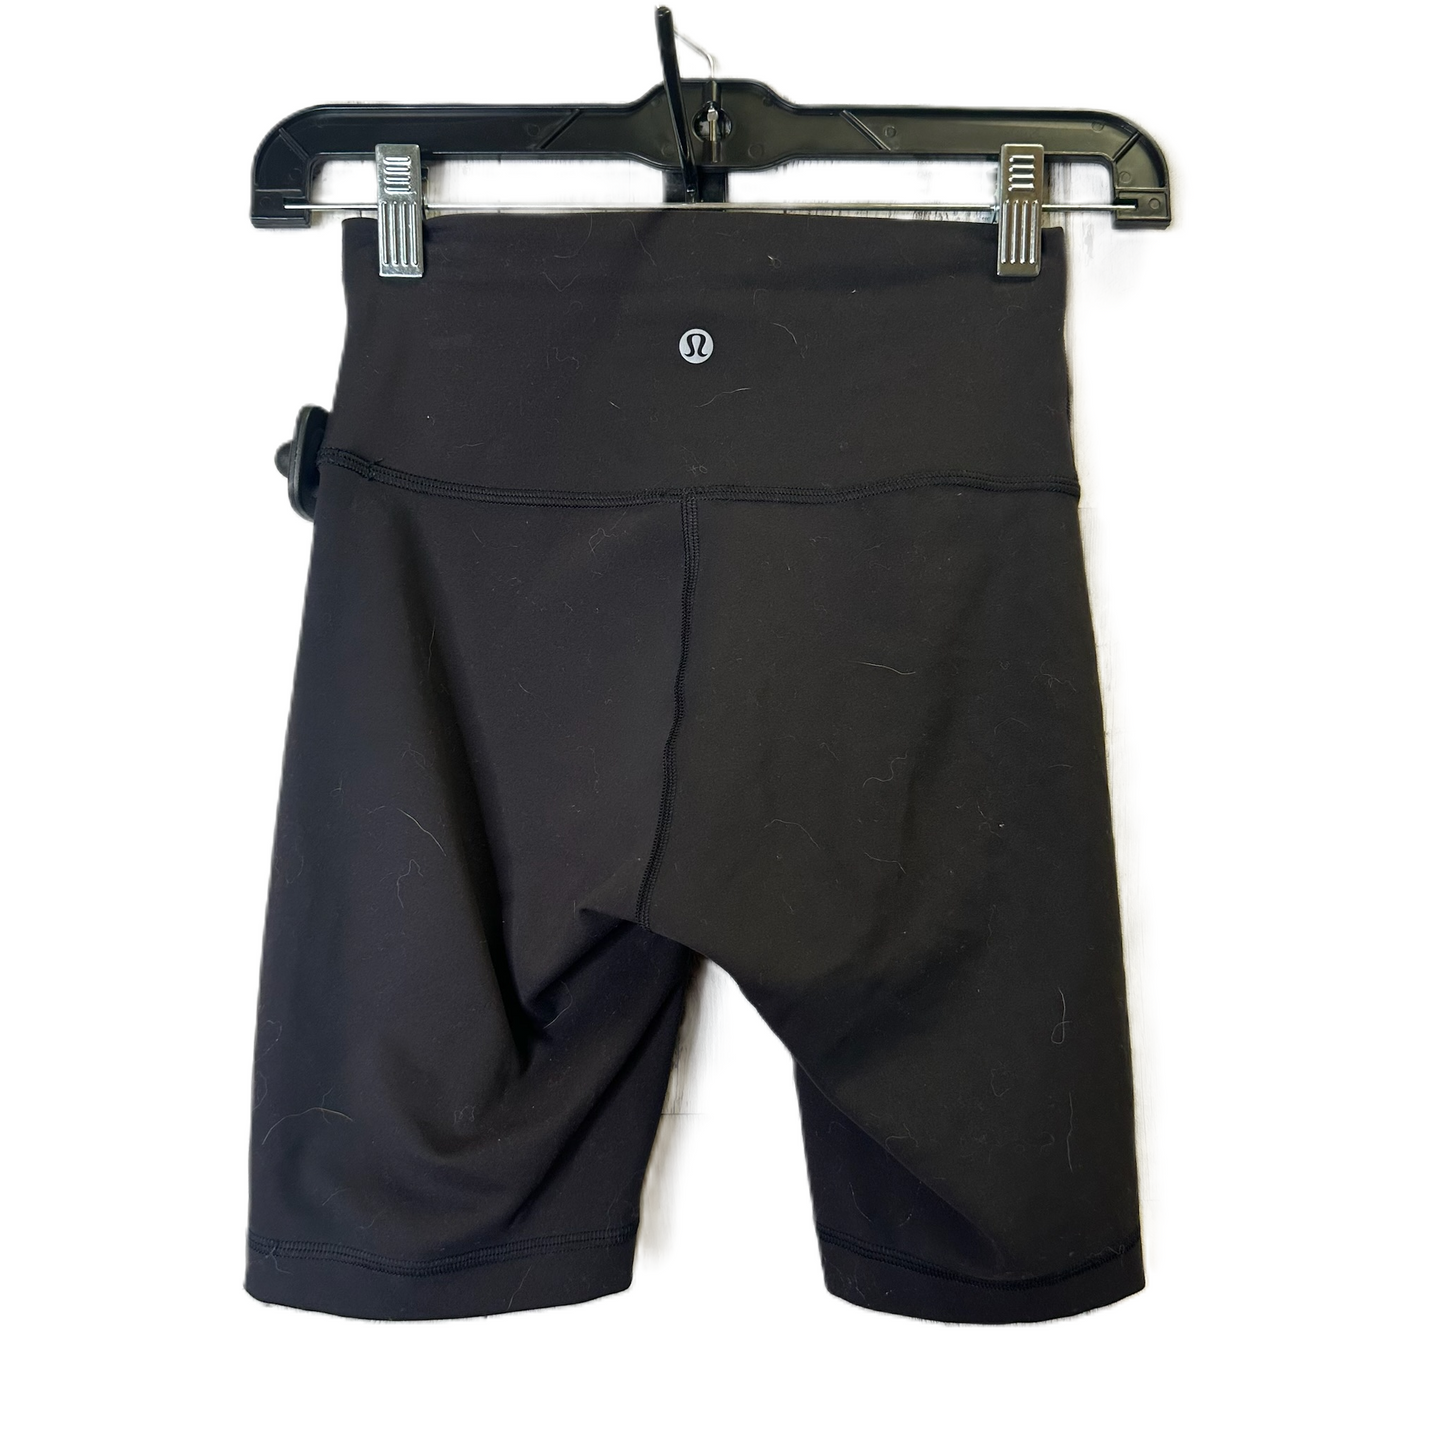 Black Athletic Shorts By Lululemon, Size: 4